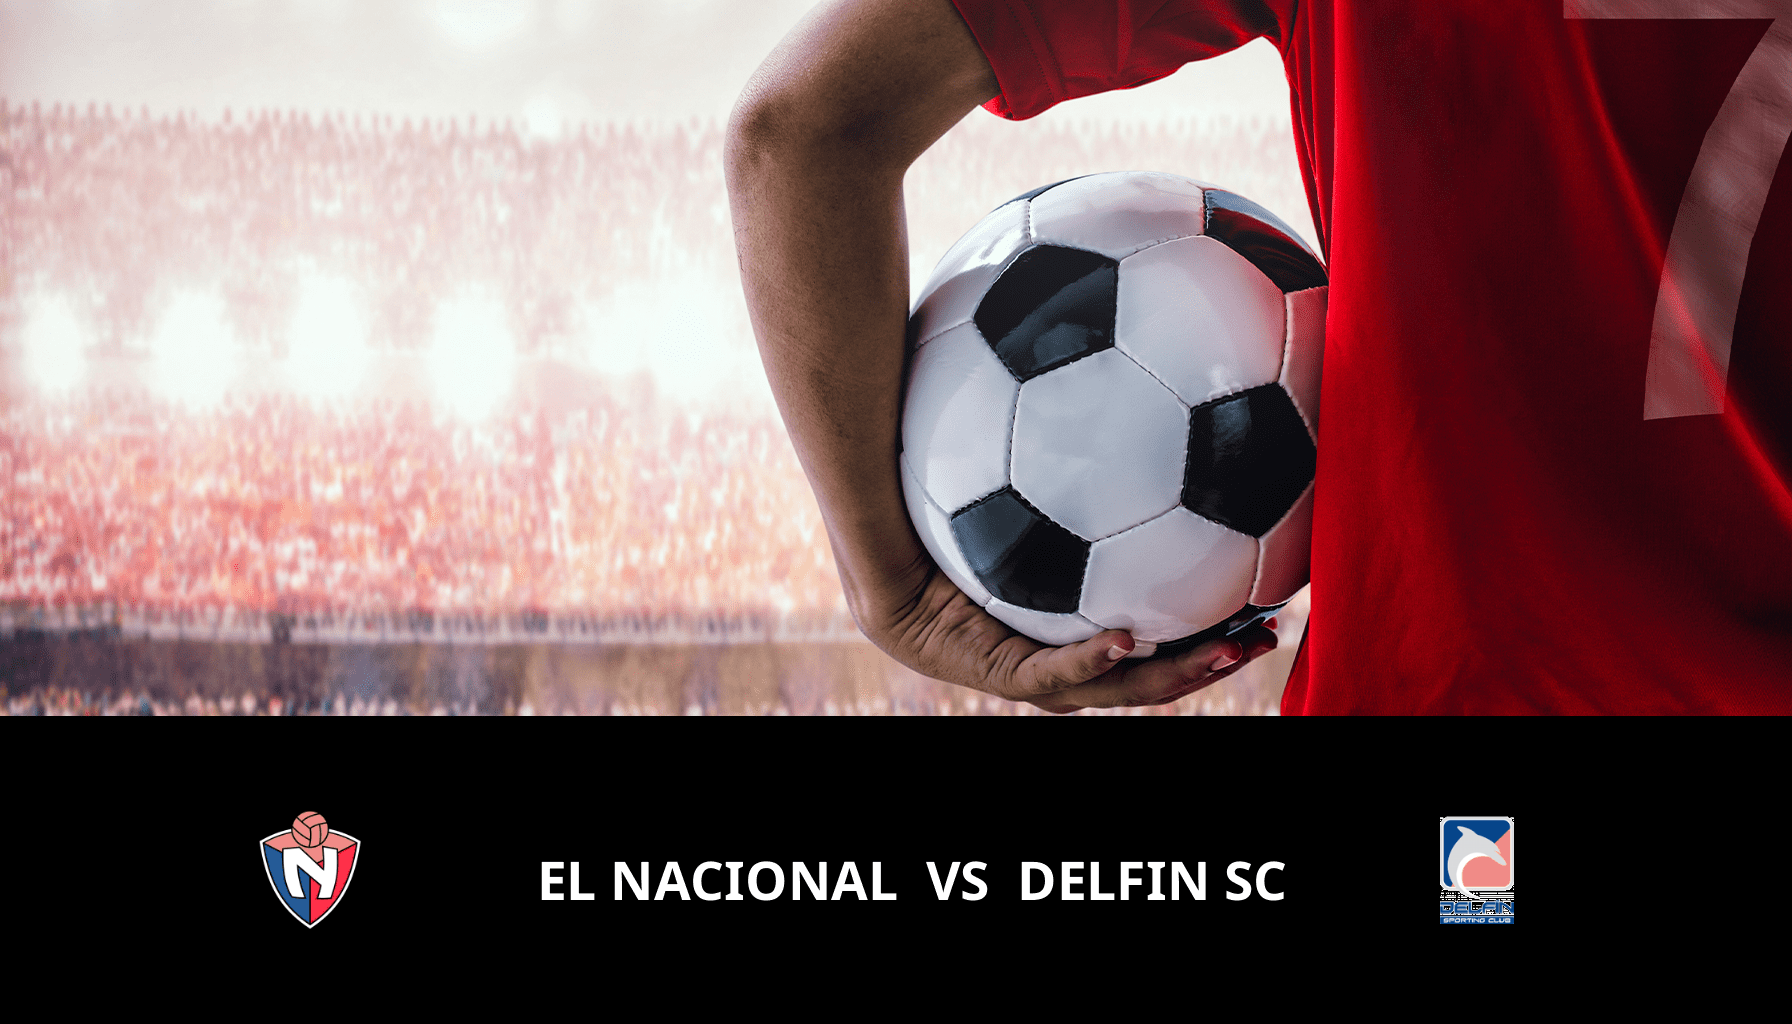 Previsione per El Nacional VS Delfin SC il 30/04/2024 Analysis of the match